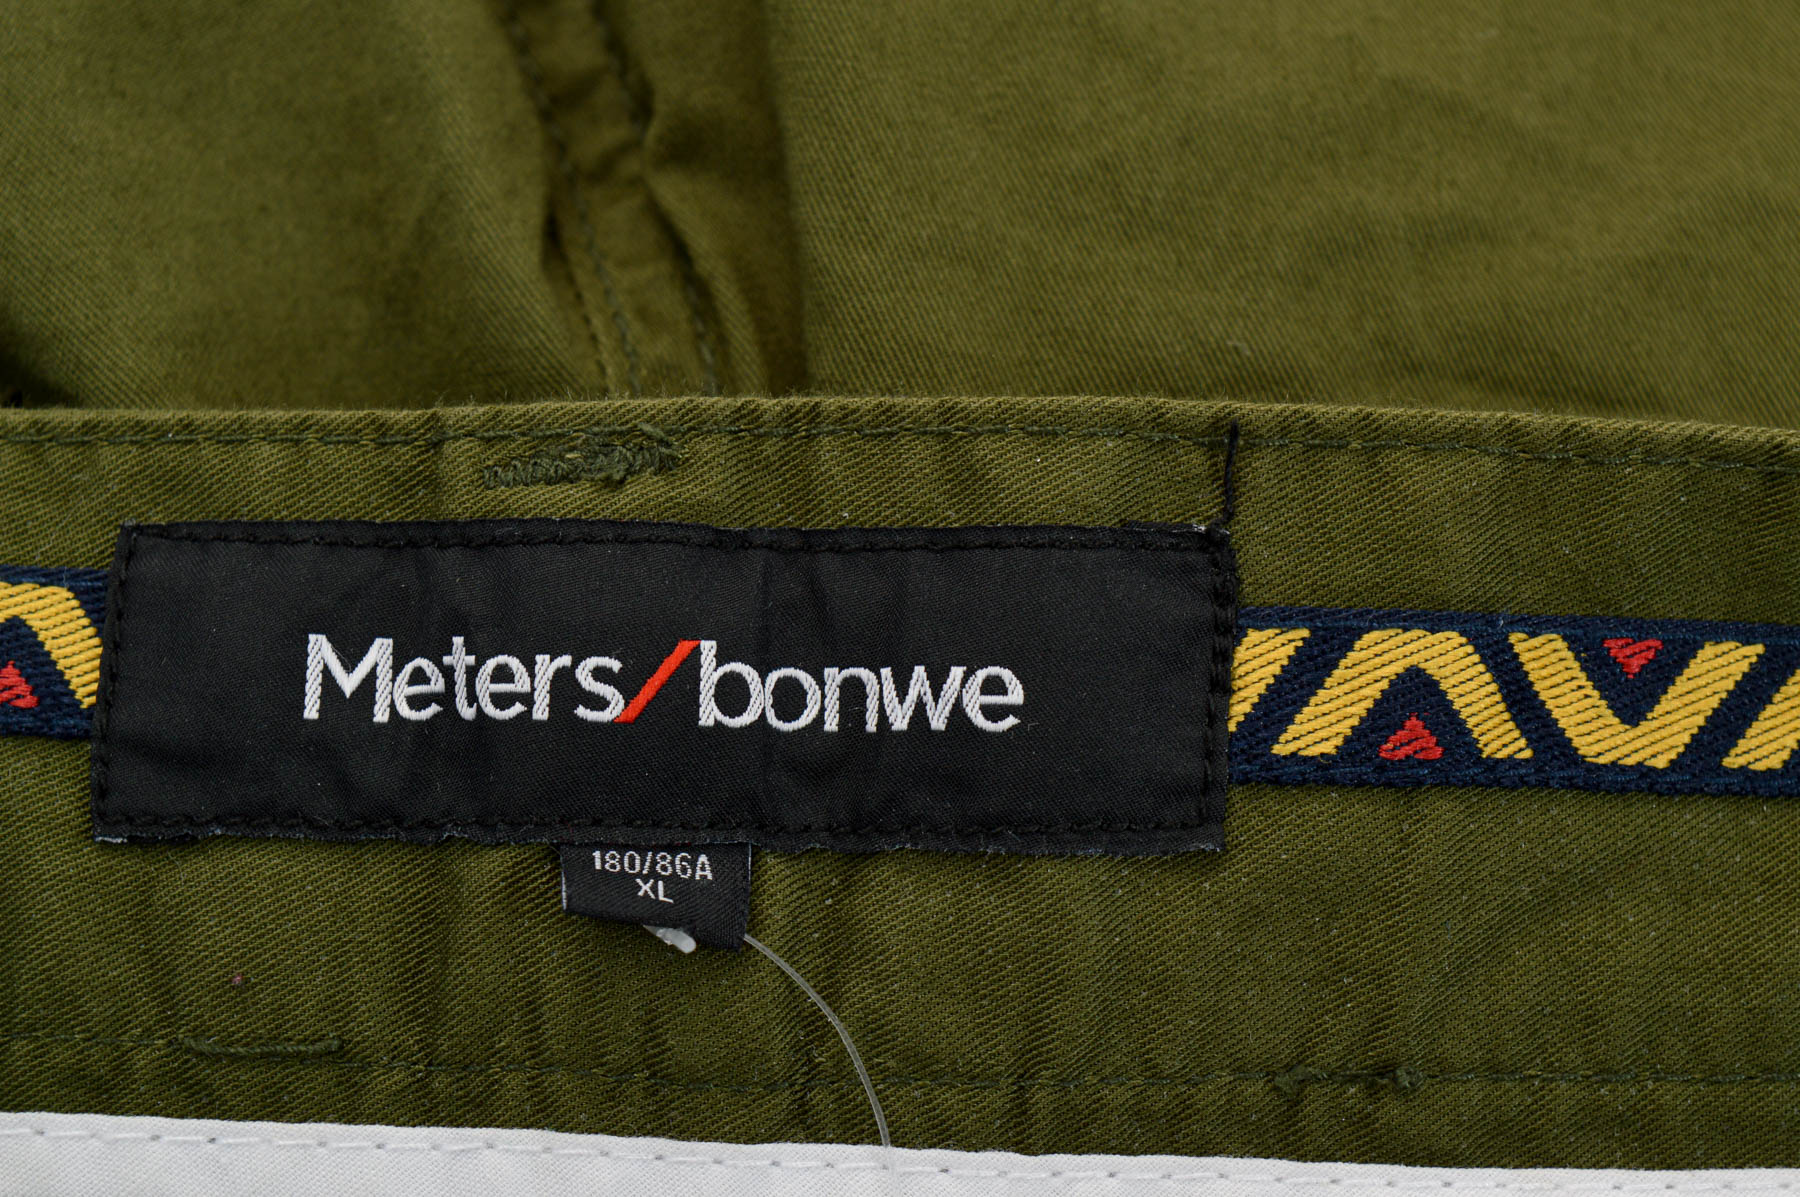 Мъжки къси панталони - Meters/bonwe - 2